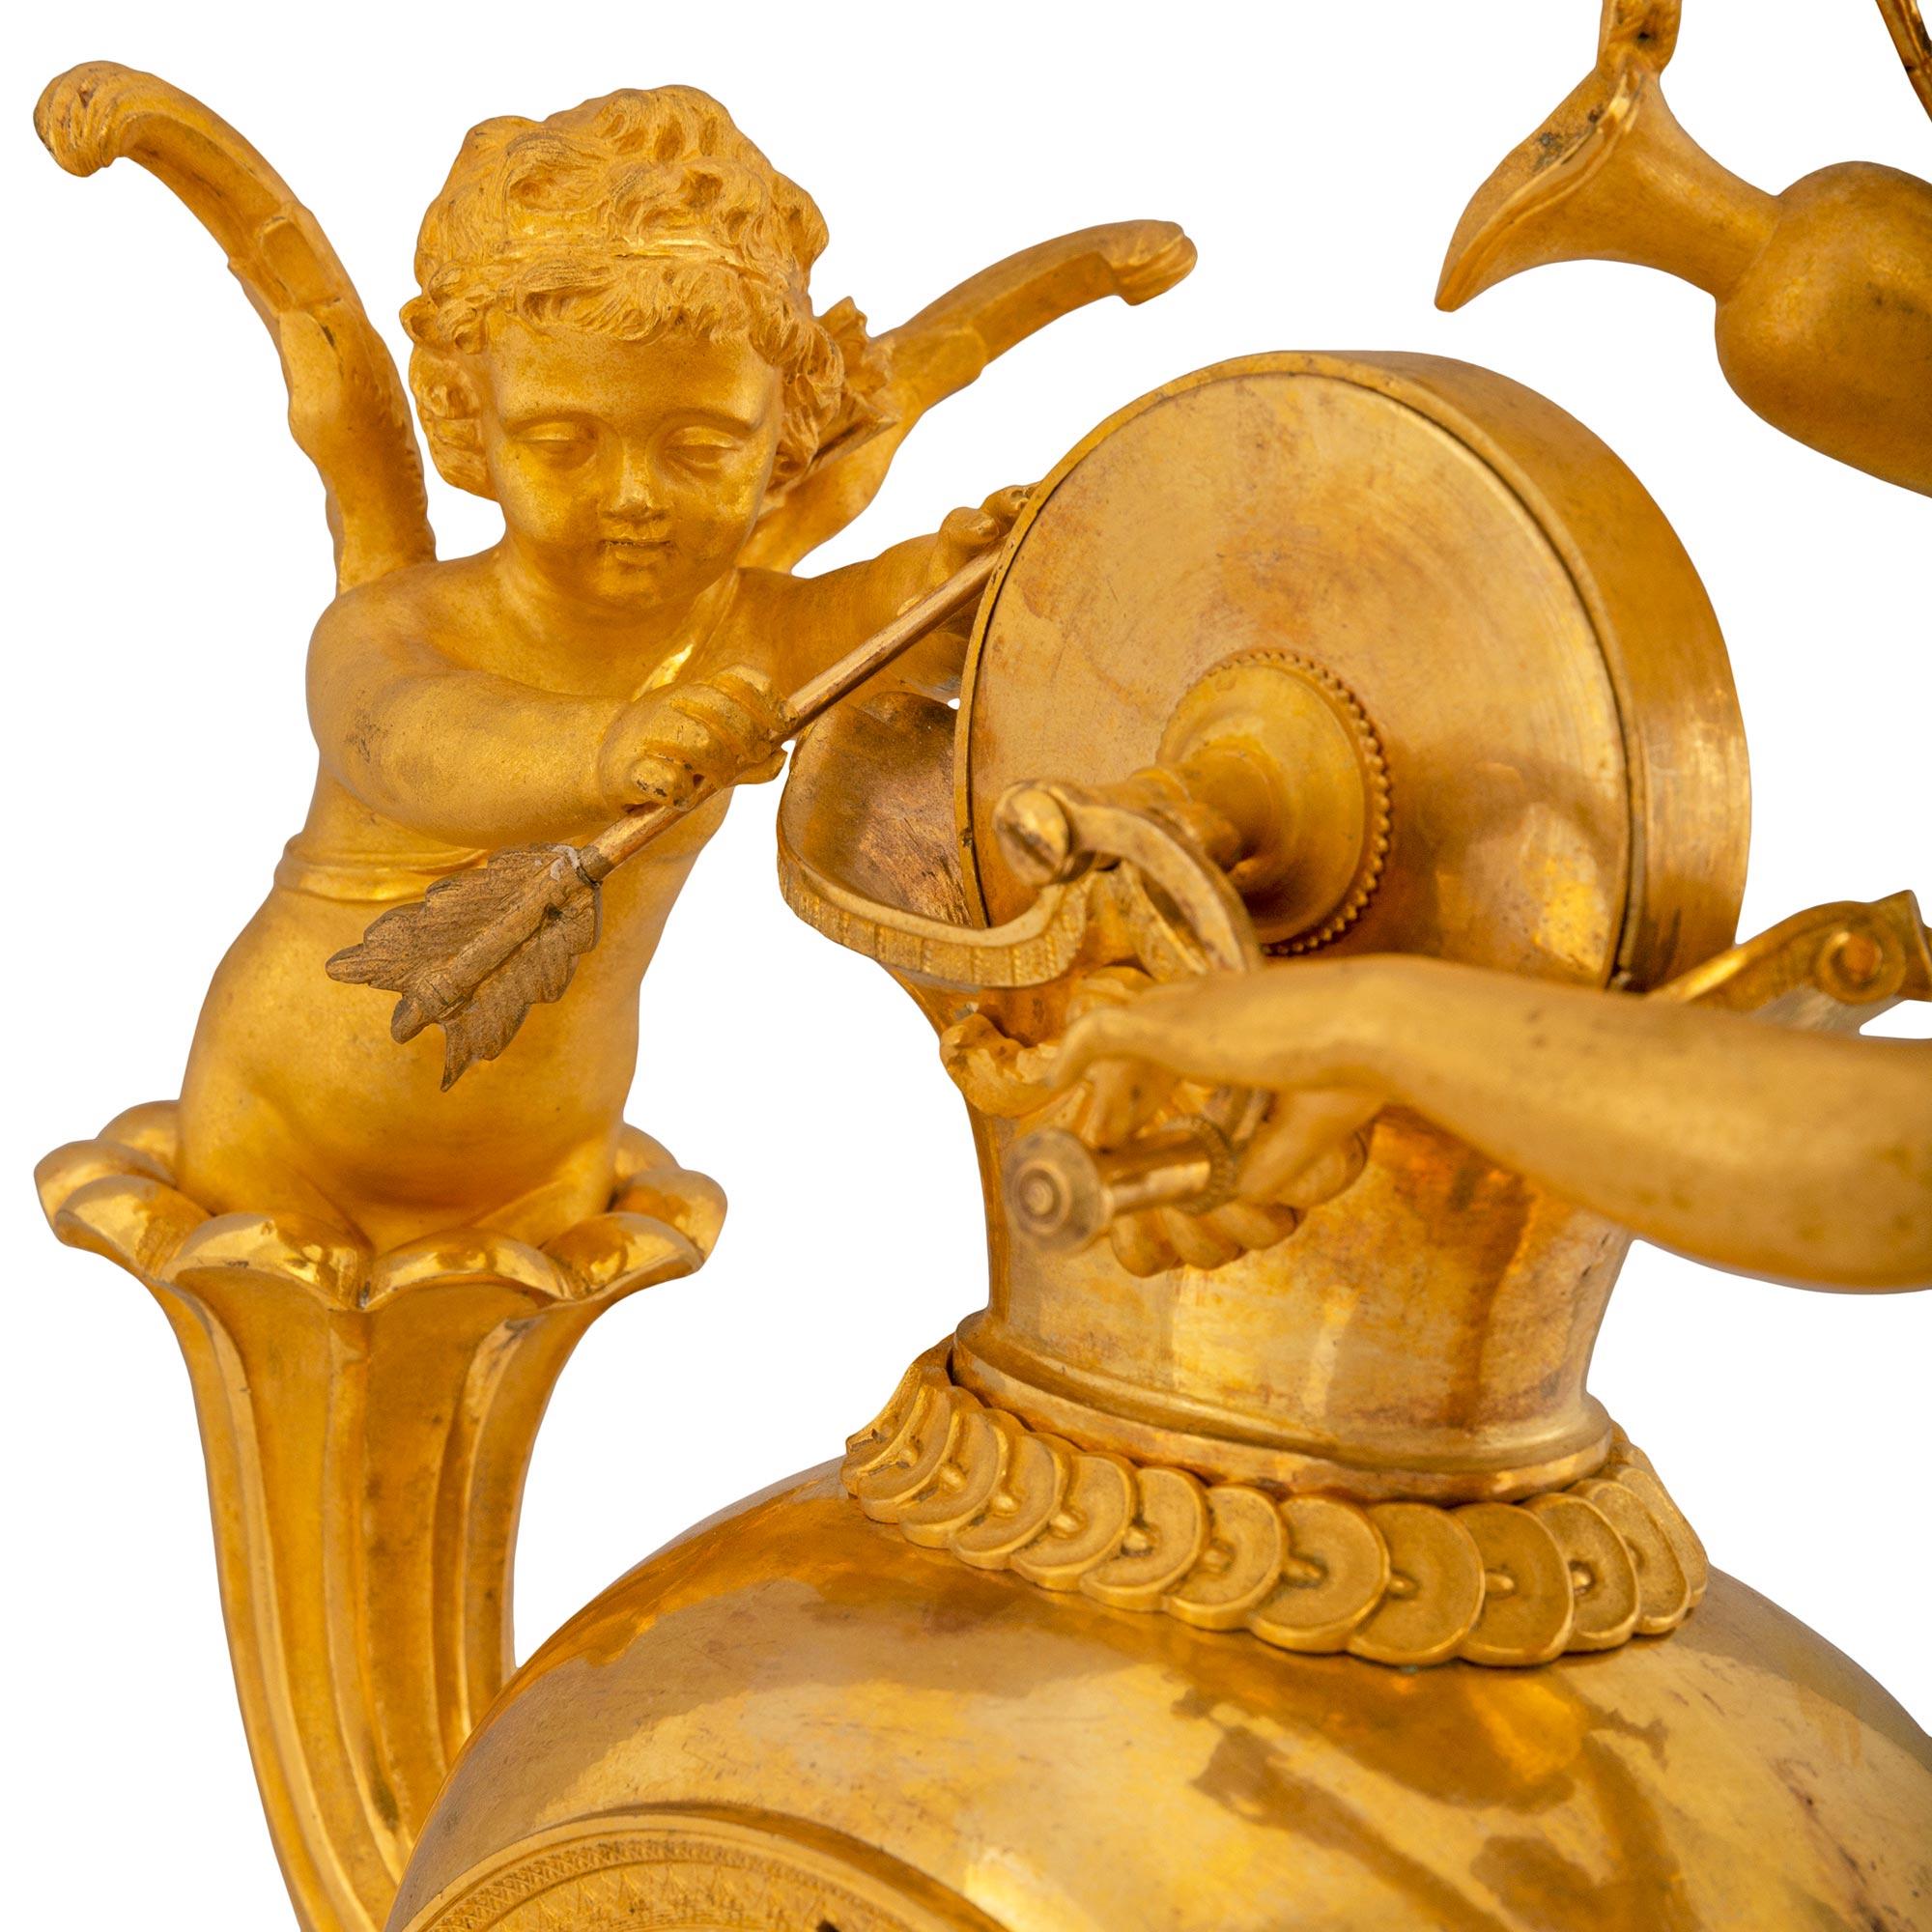 Remarquable pendule française du début du XIXe siècle en bronze doré Premier Empire, avec le mouvement original à fil de soie, daté de 1809. Il repose sur une plate-forme carrée moulée en bronze doré, au-dessus de supports en forme de petits pains.